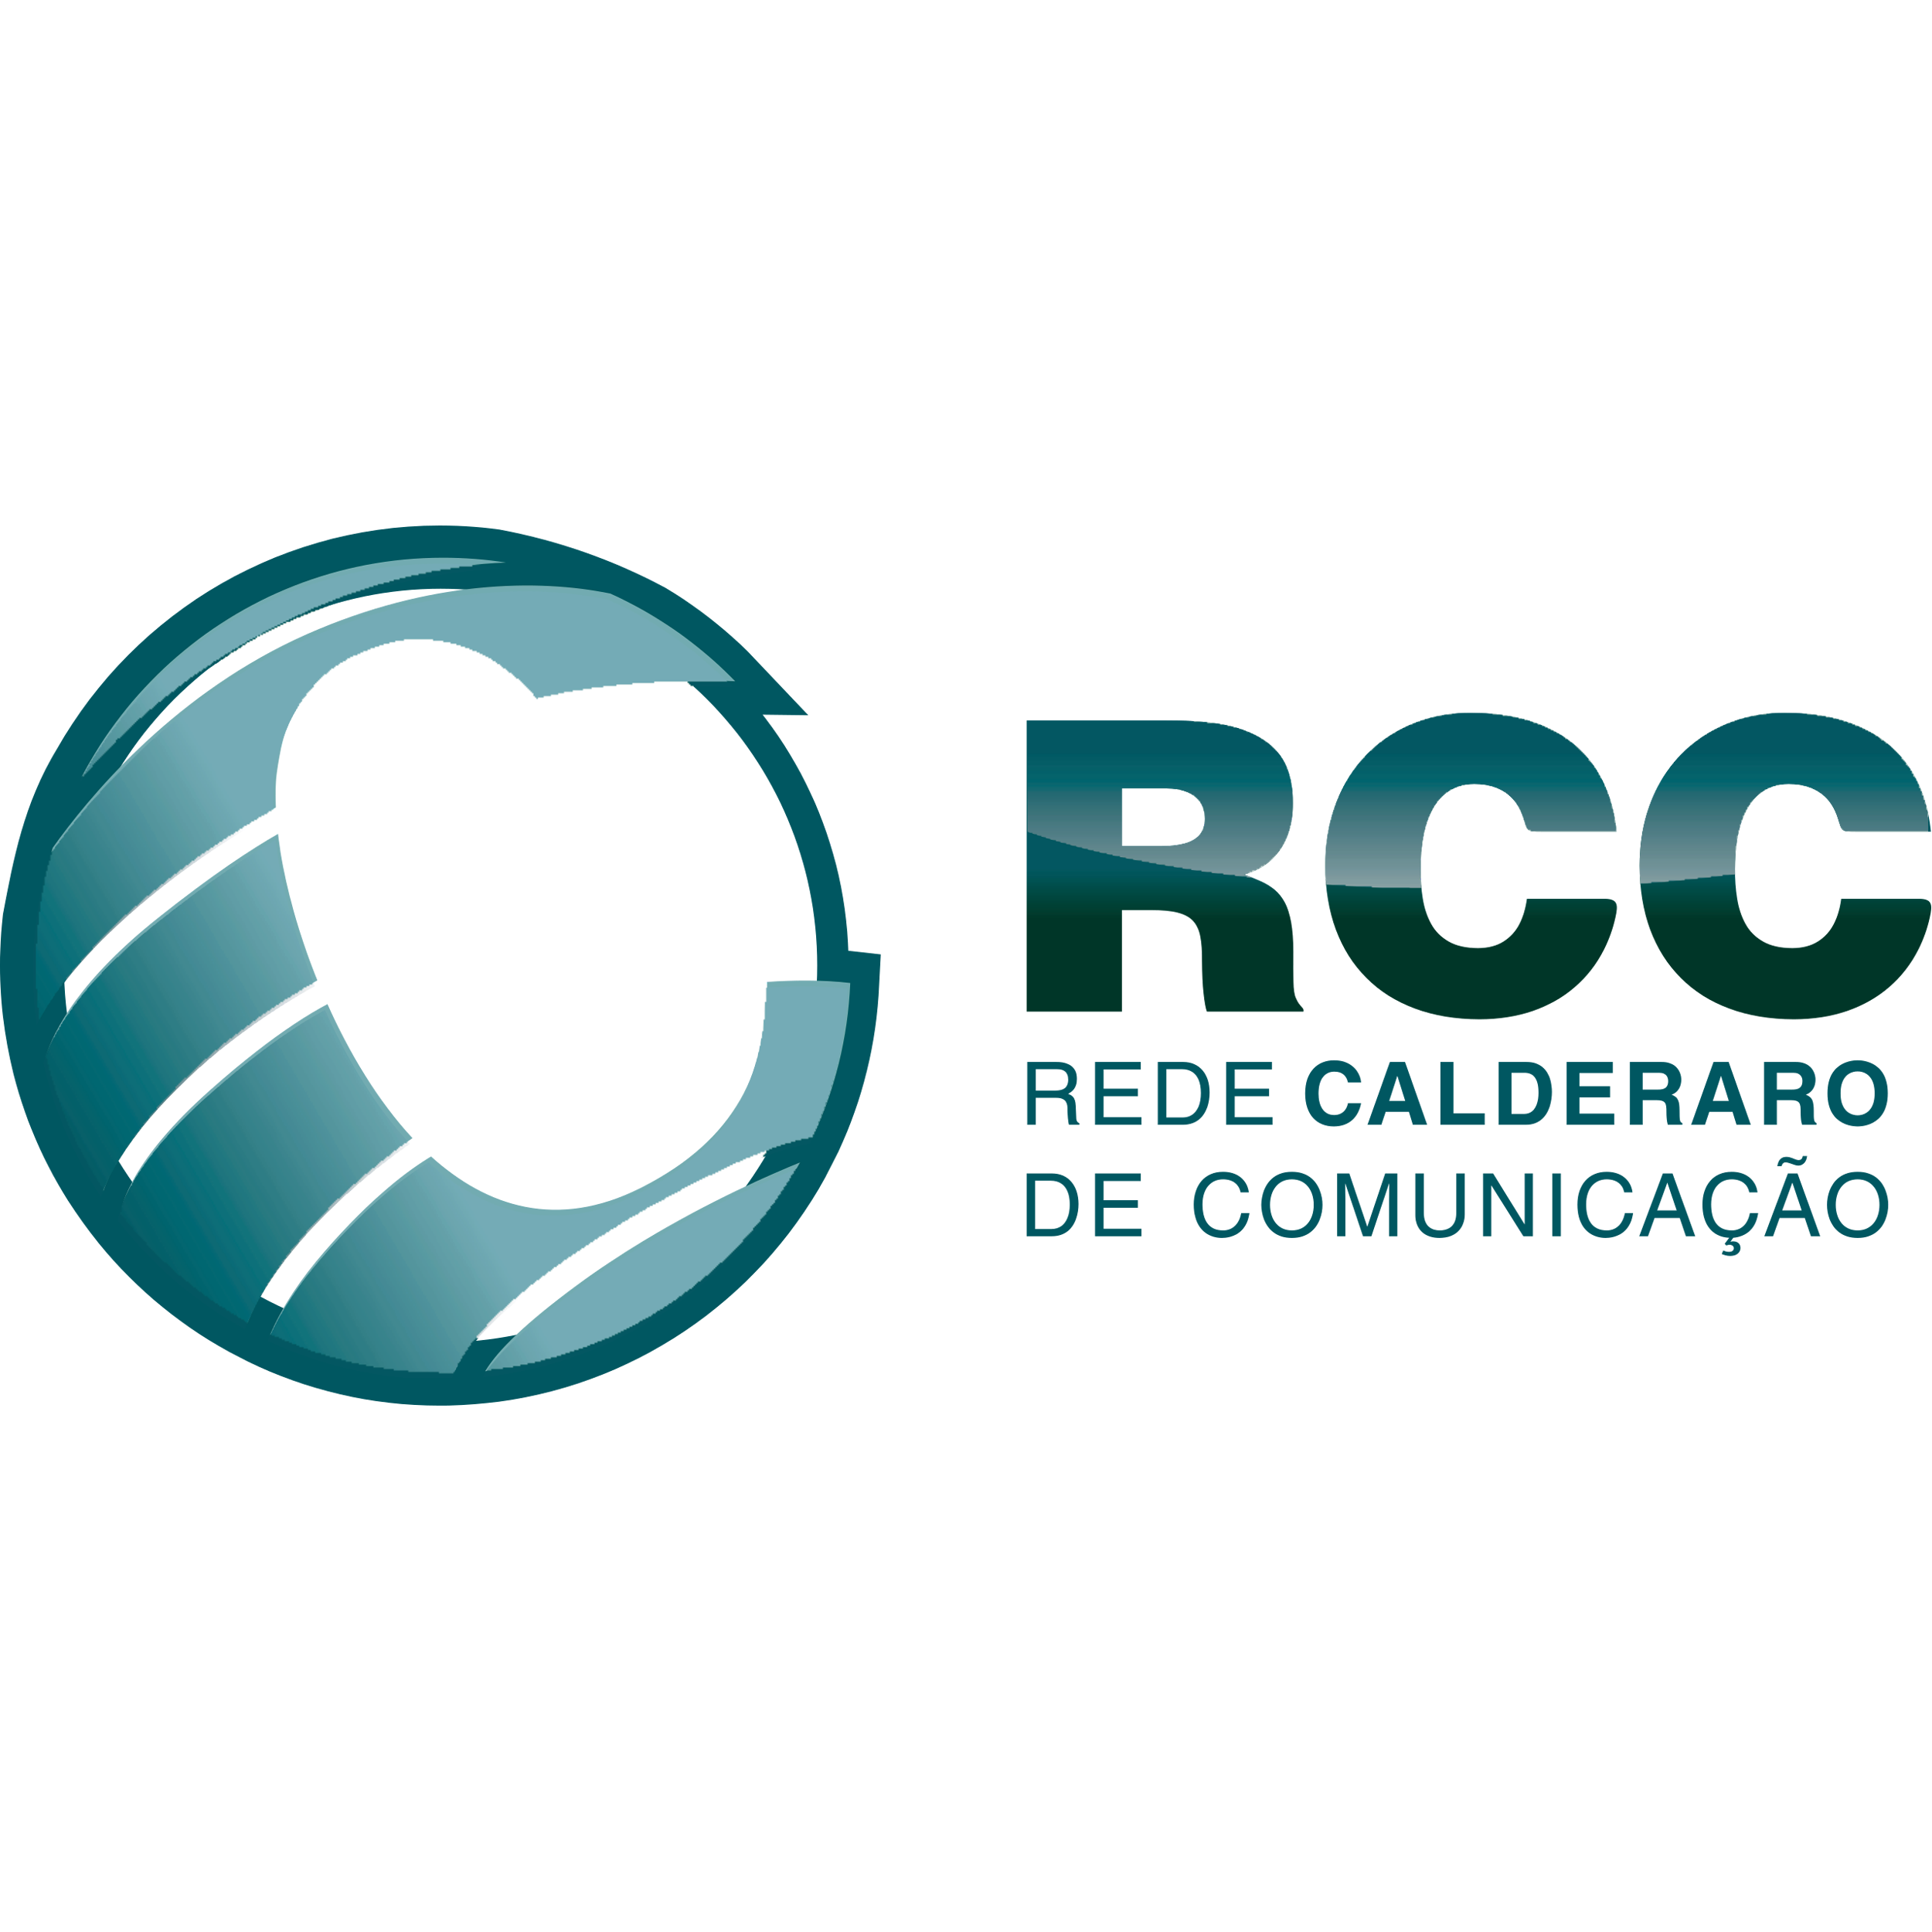 Rede Calderaro De Comunicacao Logo Transparent Clipart